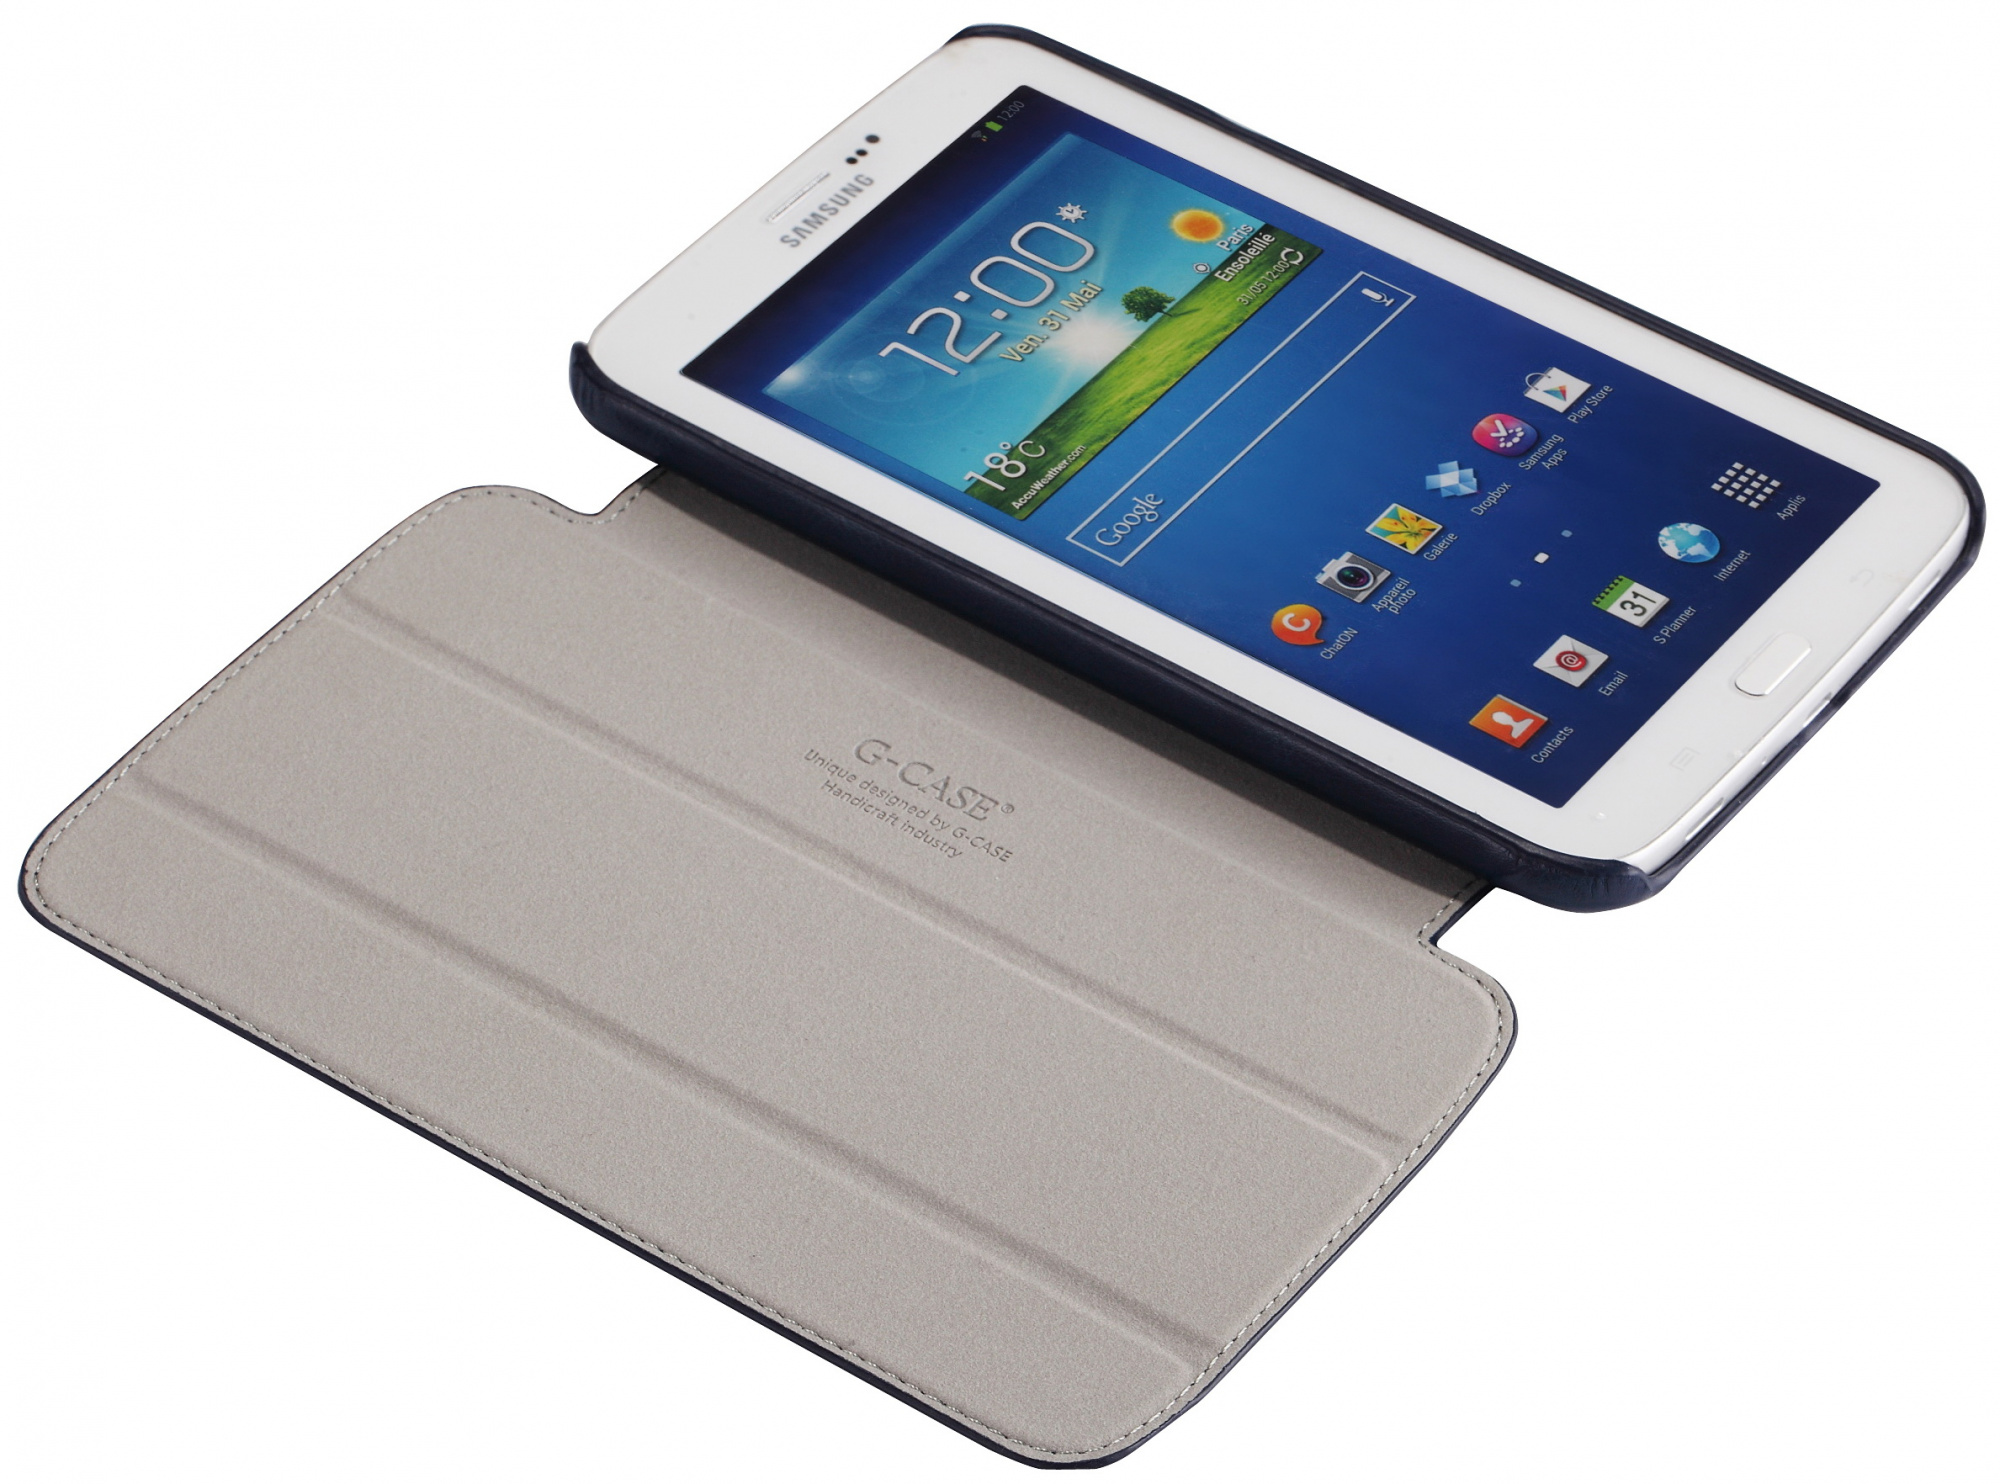 Galaxy 3 7. Samsung Galaxy Tab 3. Samsung Galaxy Tab 3 7. Galaxy Tab 3 7.0. Чехол самсунг галакси tab3.